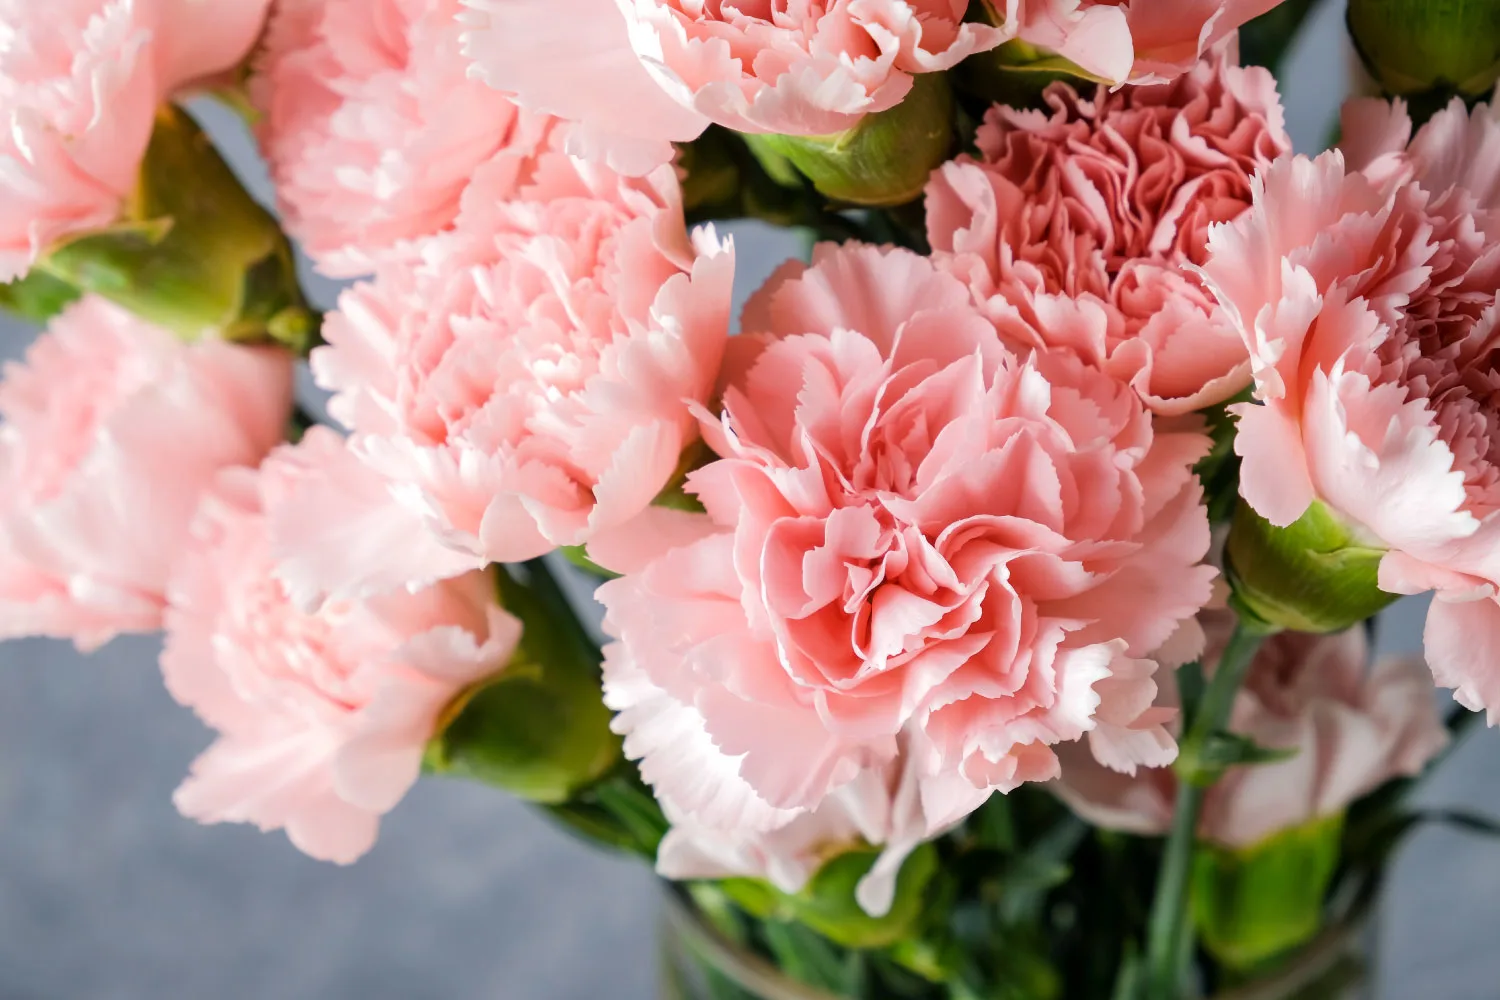 carnations-sympathy